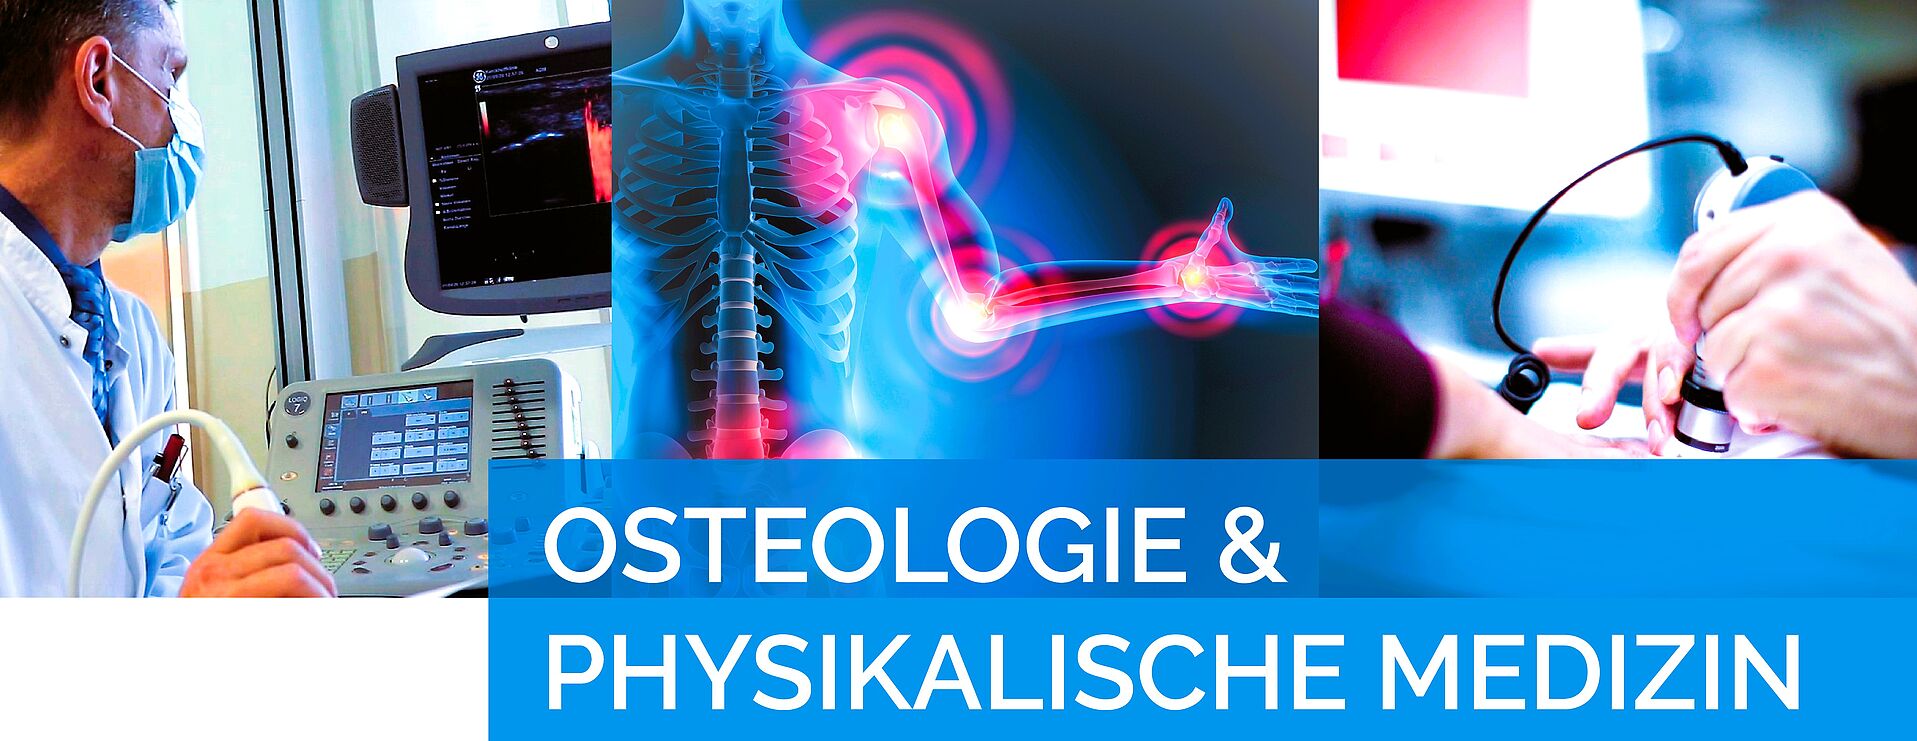 Osteologie und physikalische Medizin